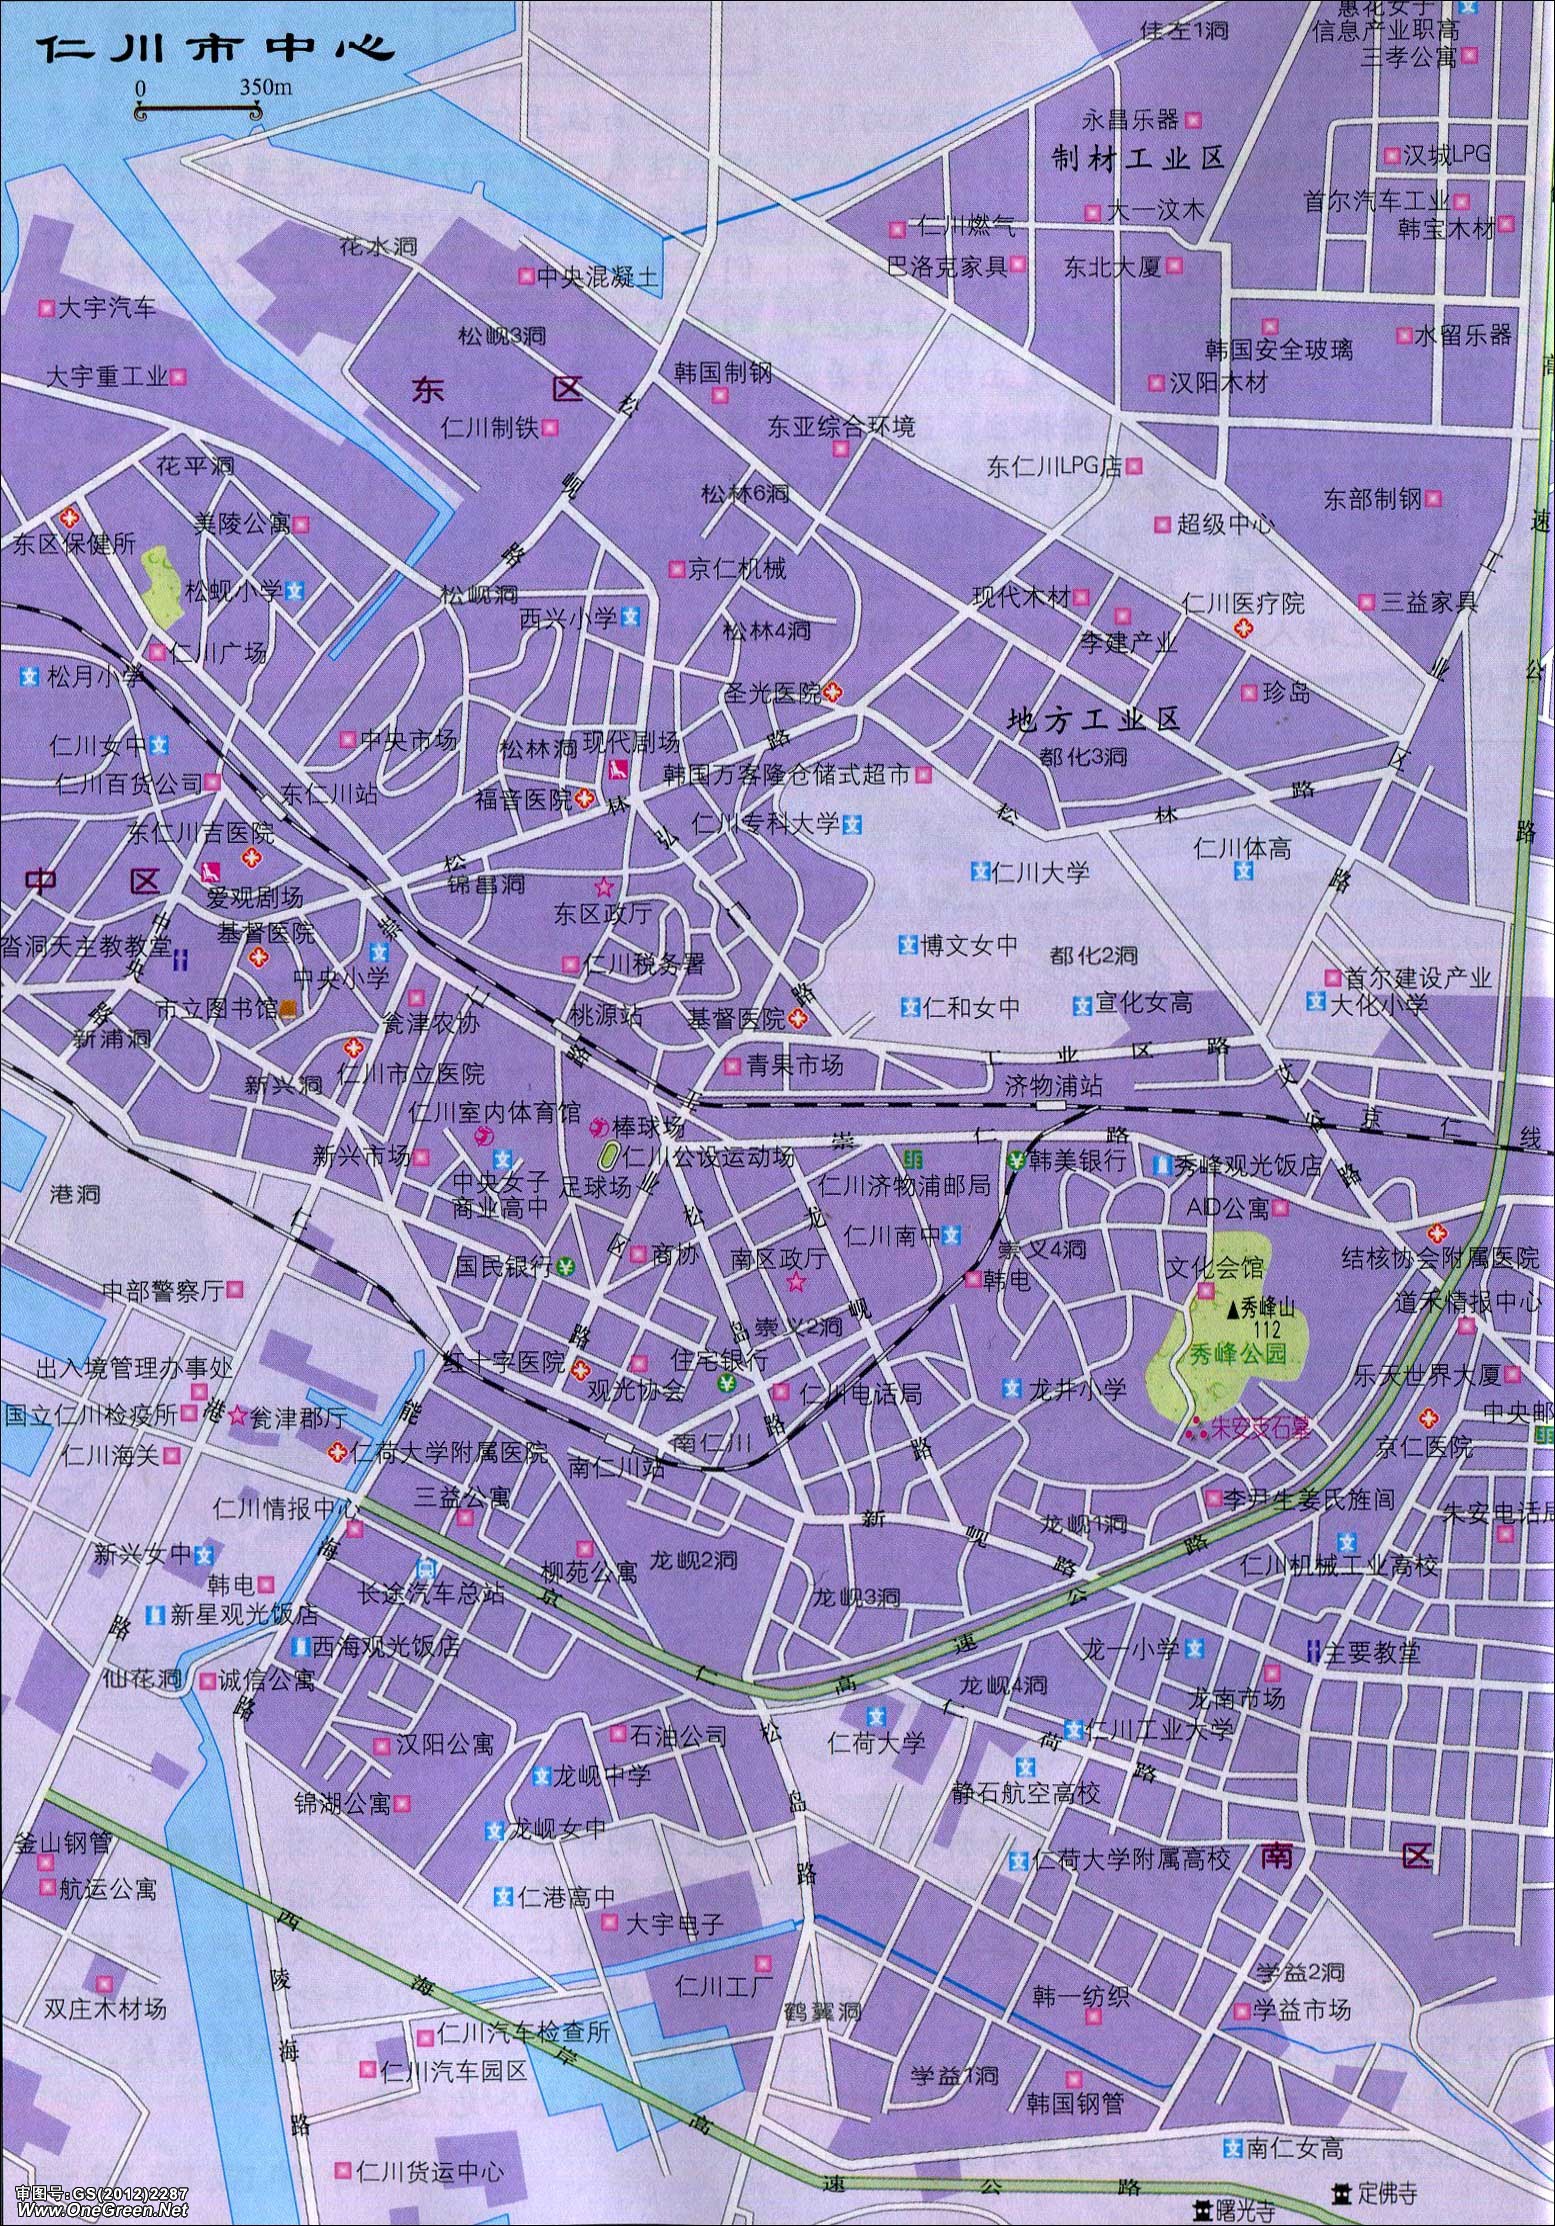 仁川市中心地图